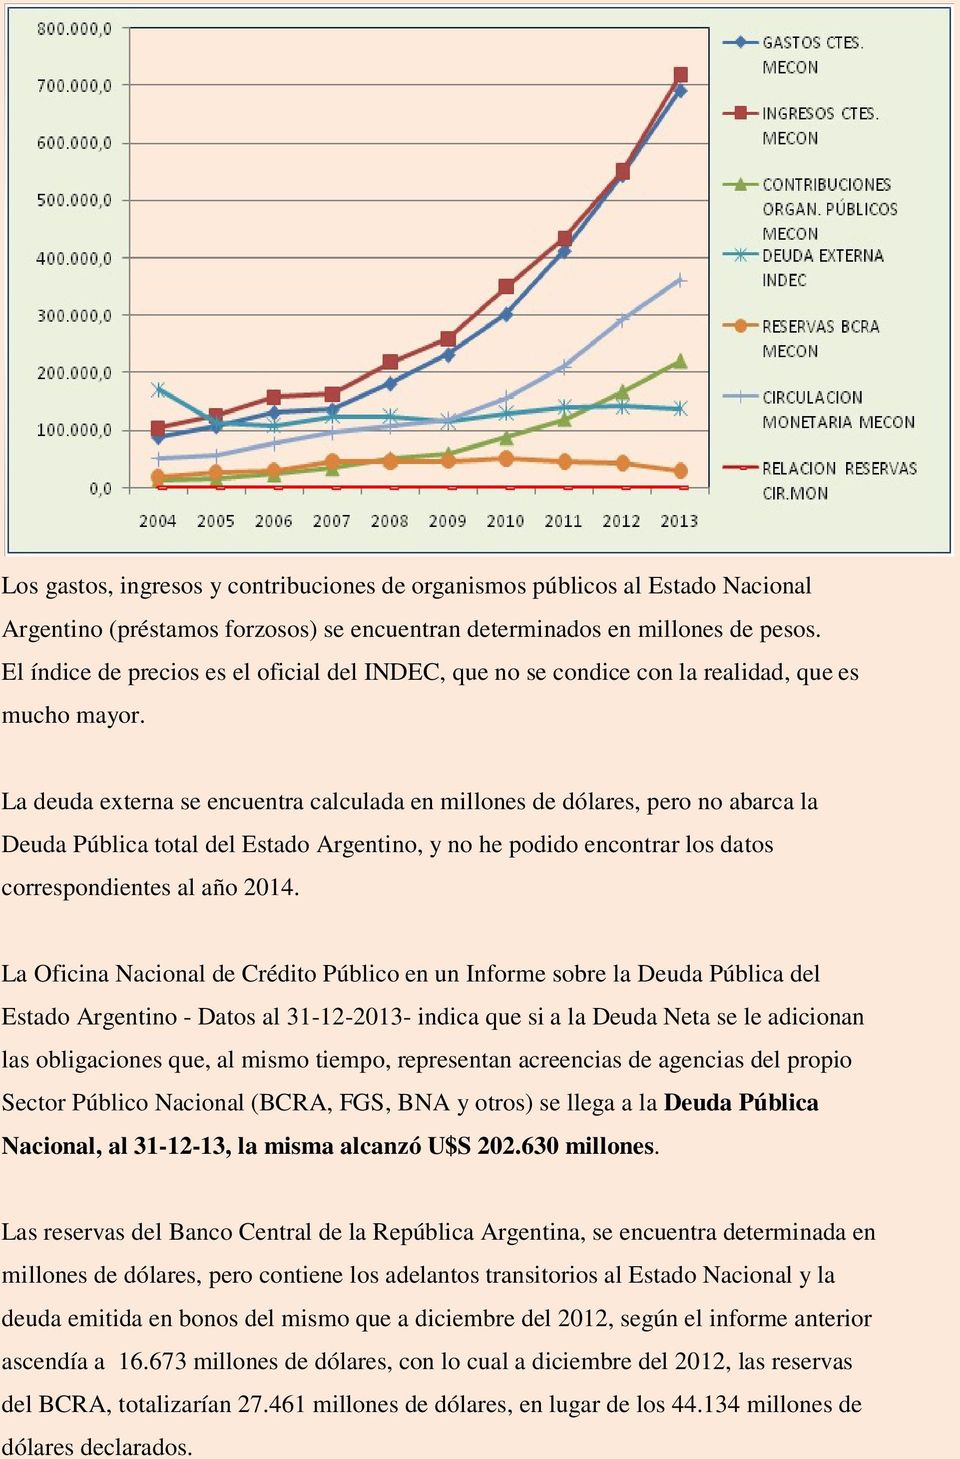 La deuda externa se encuentra calculada en millones de dólares, pero no abarca la Deuda Pública total del Estado Argentino, y no he podido encontrar los datos correspondientes al año 2014.